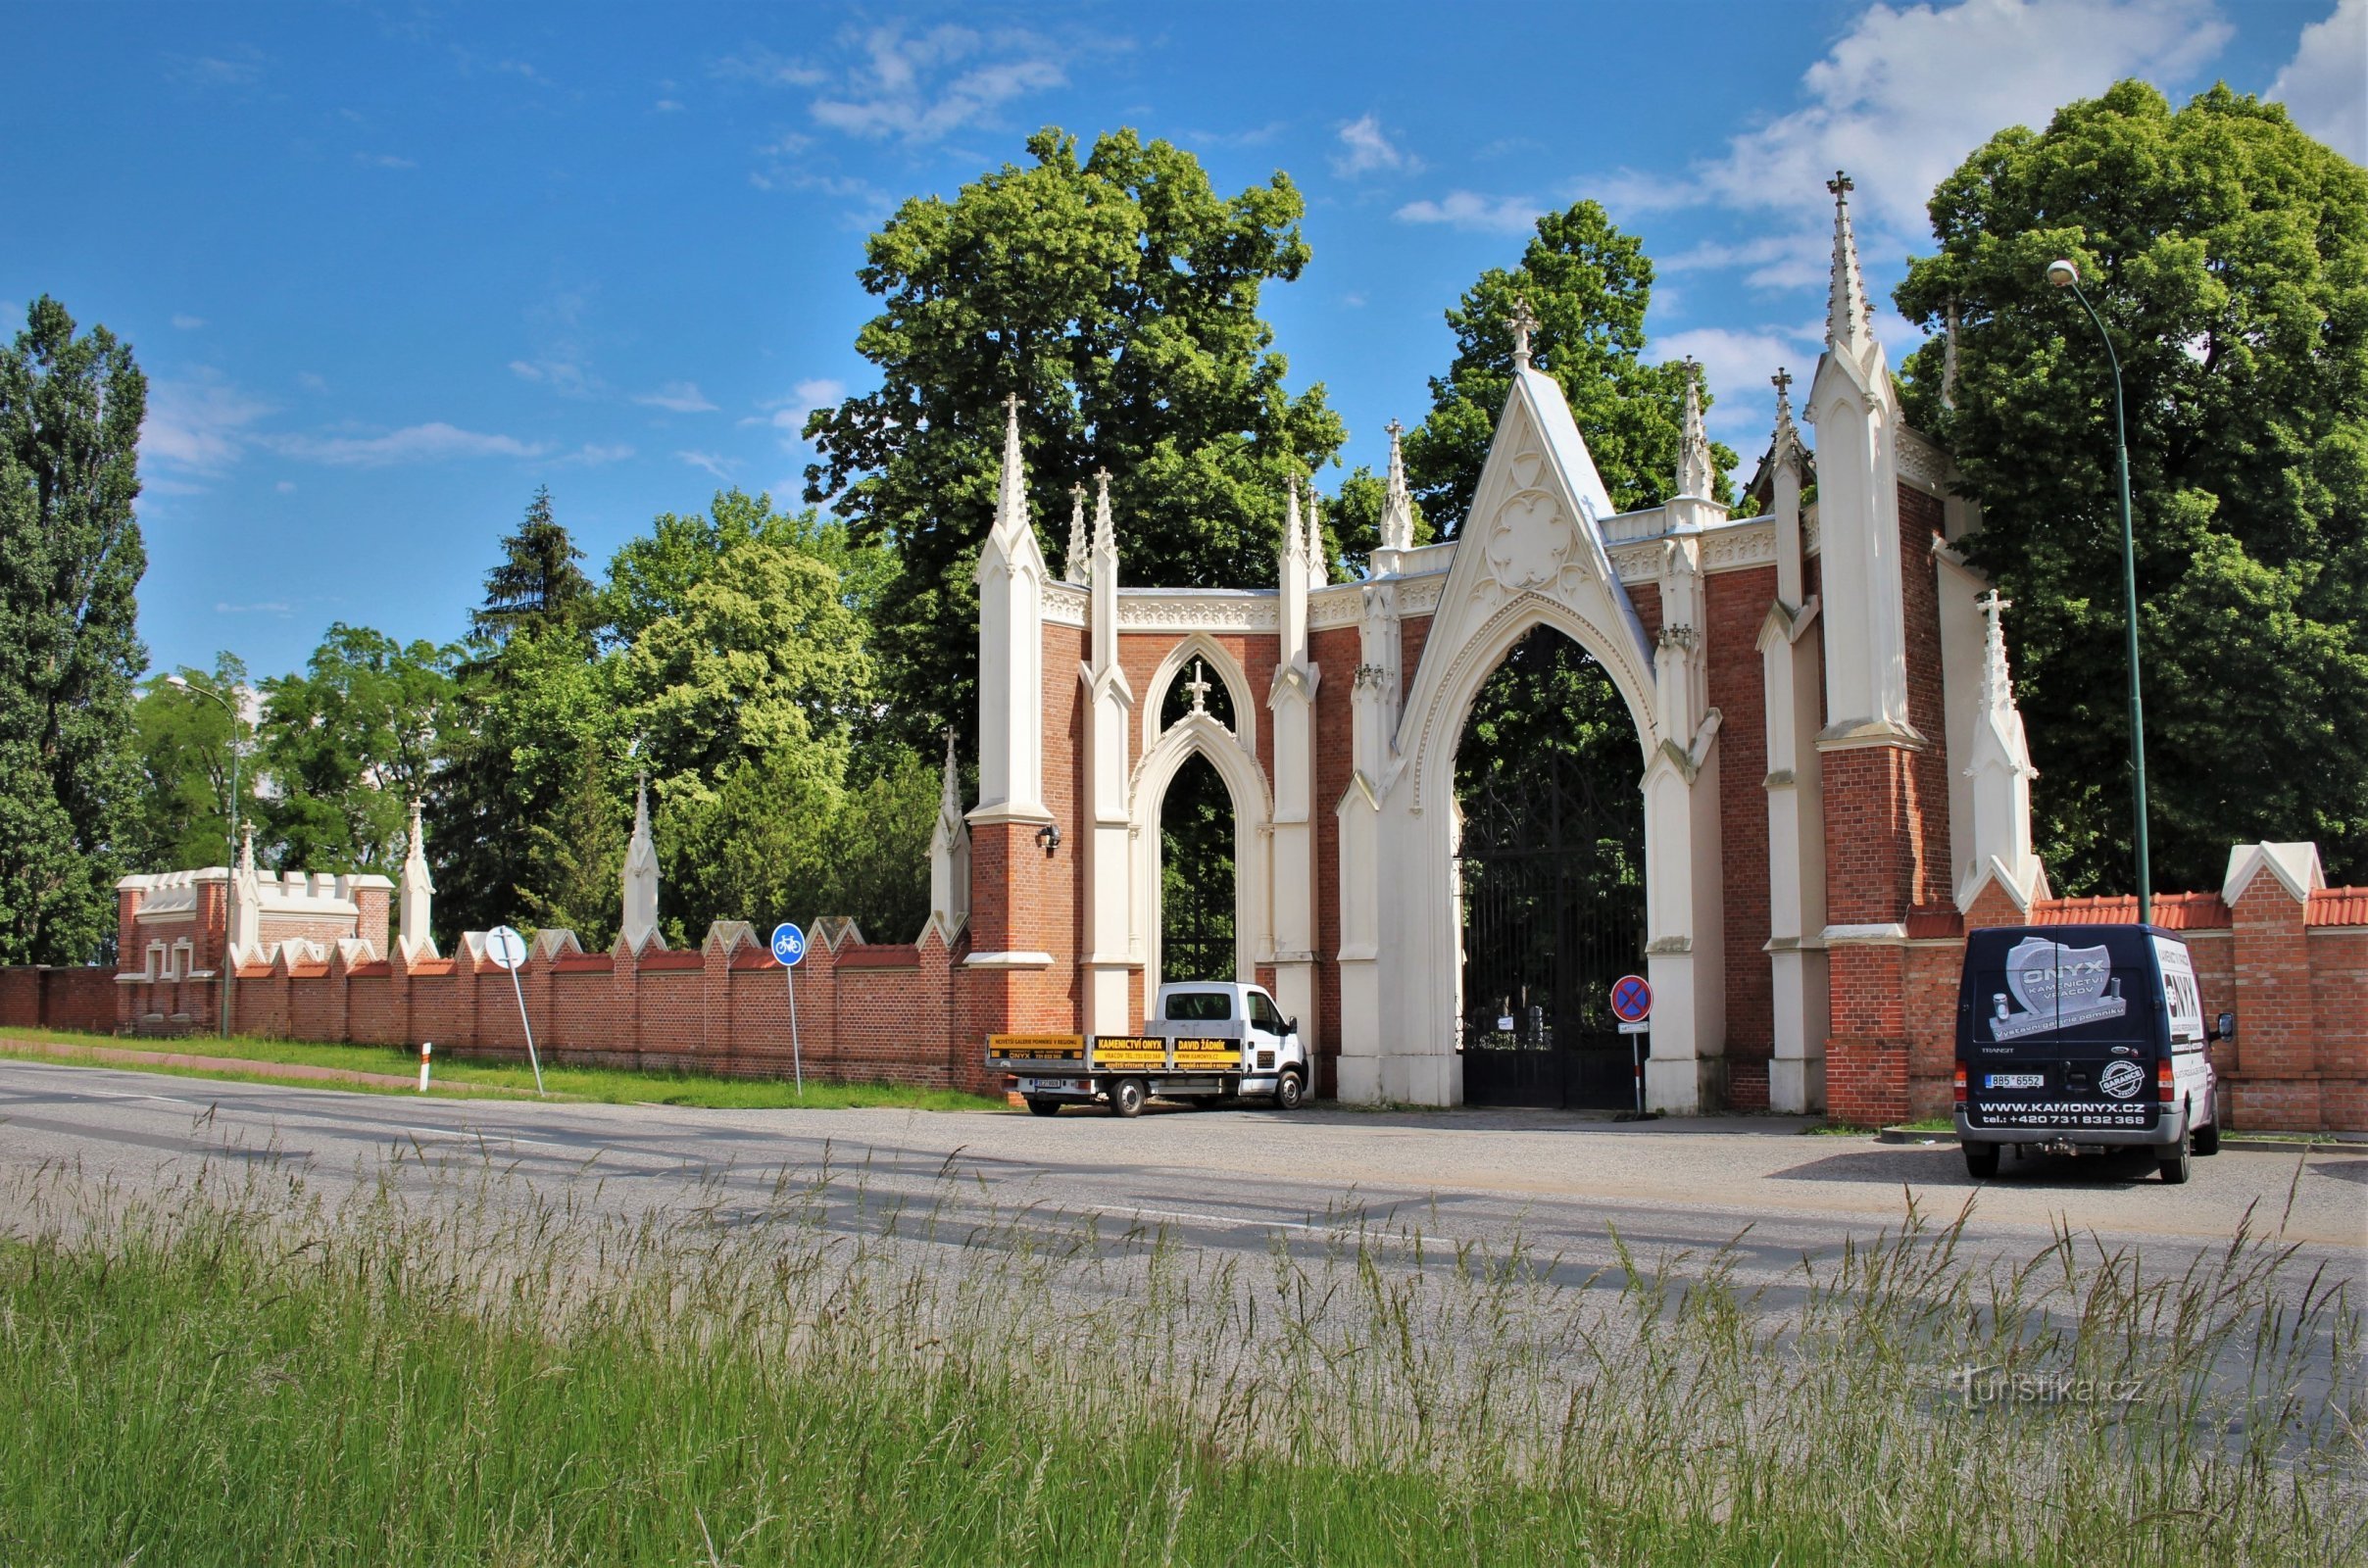 Porte d'entrée au cimetière avec un mur